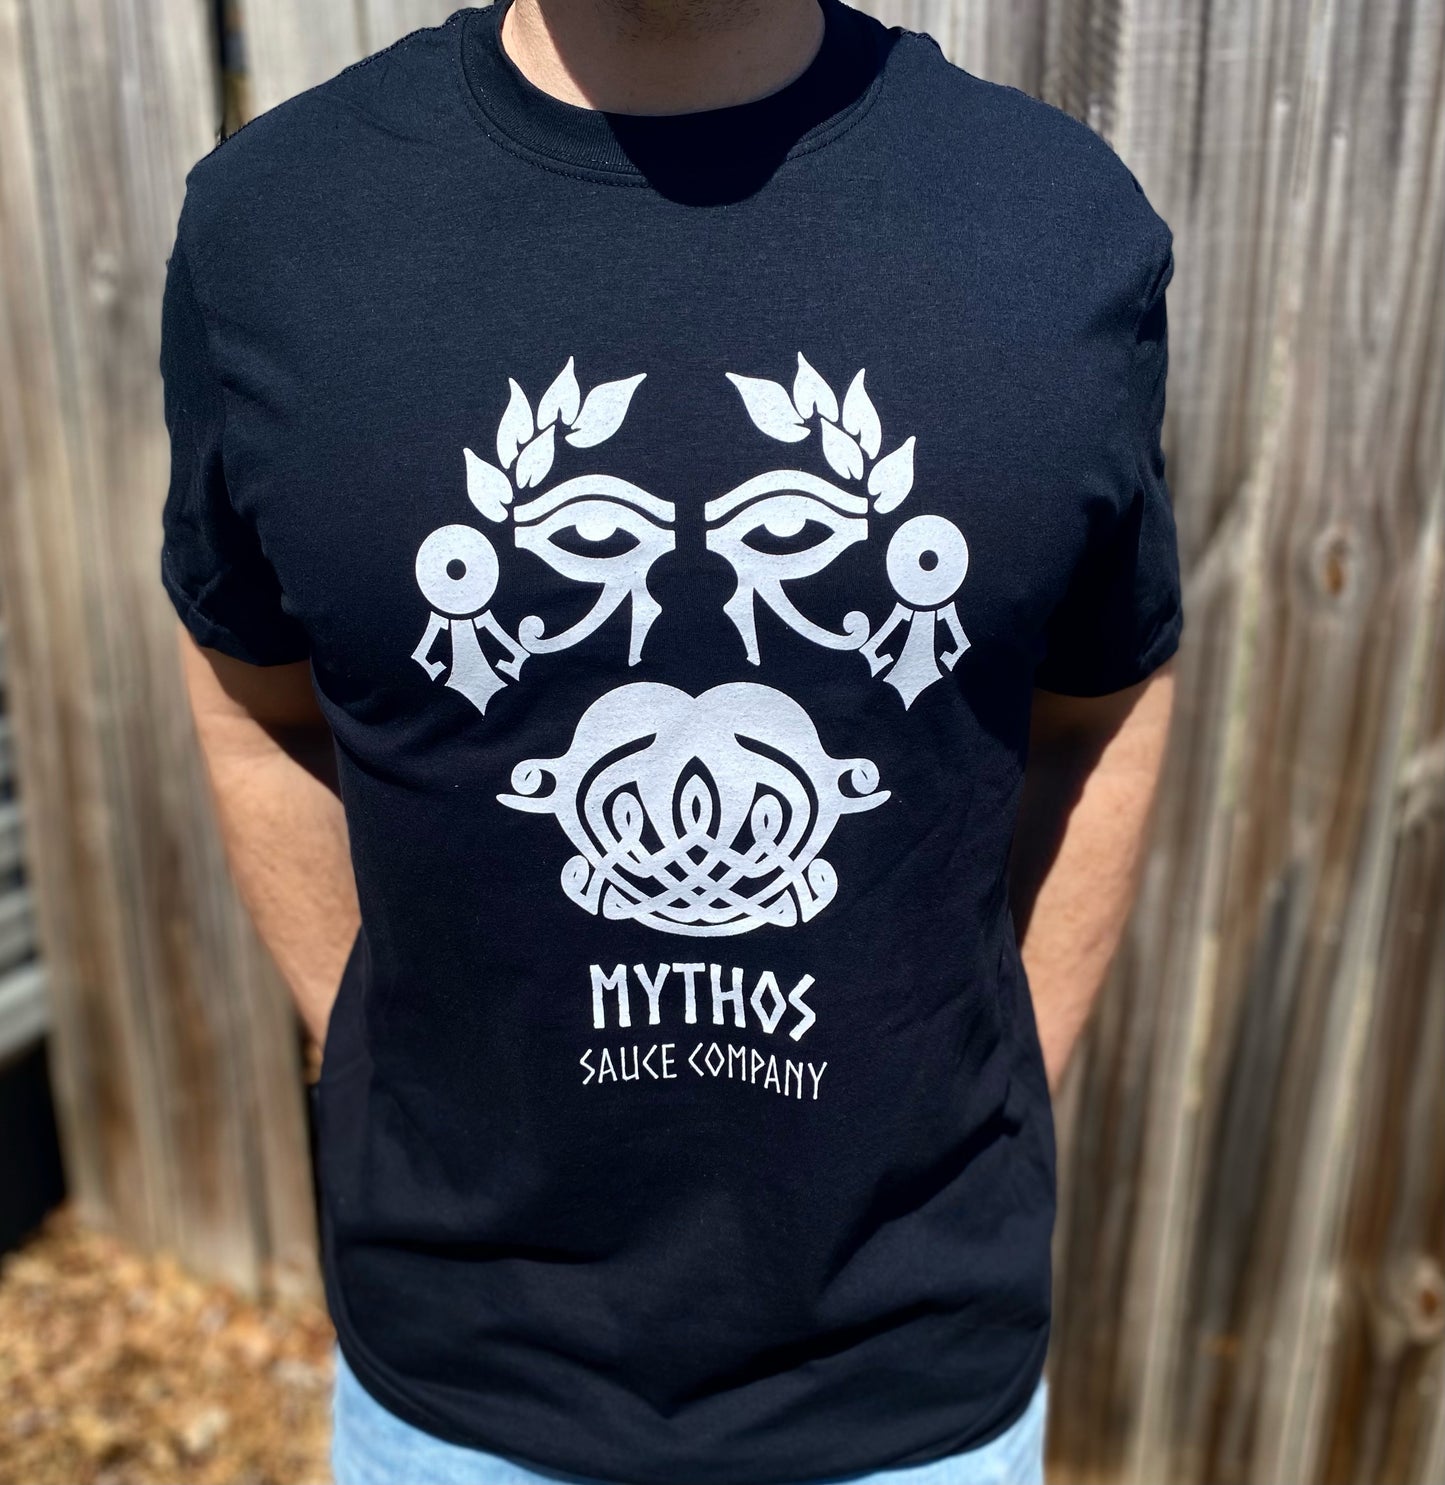 Mythos Logo Shirt - Black